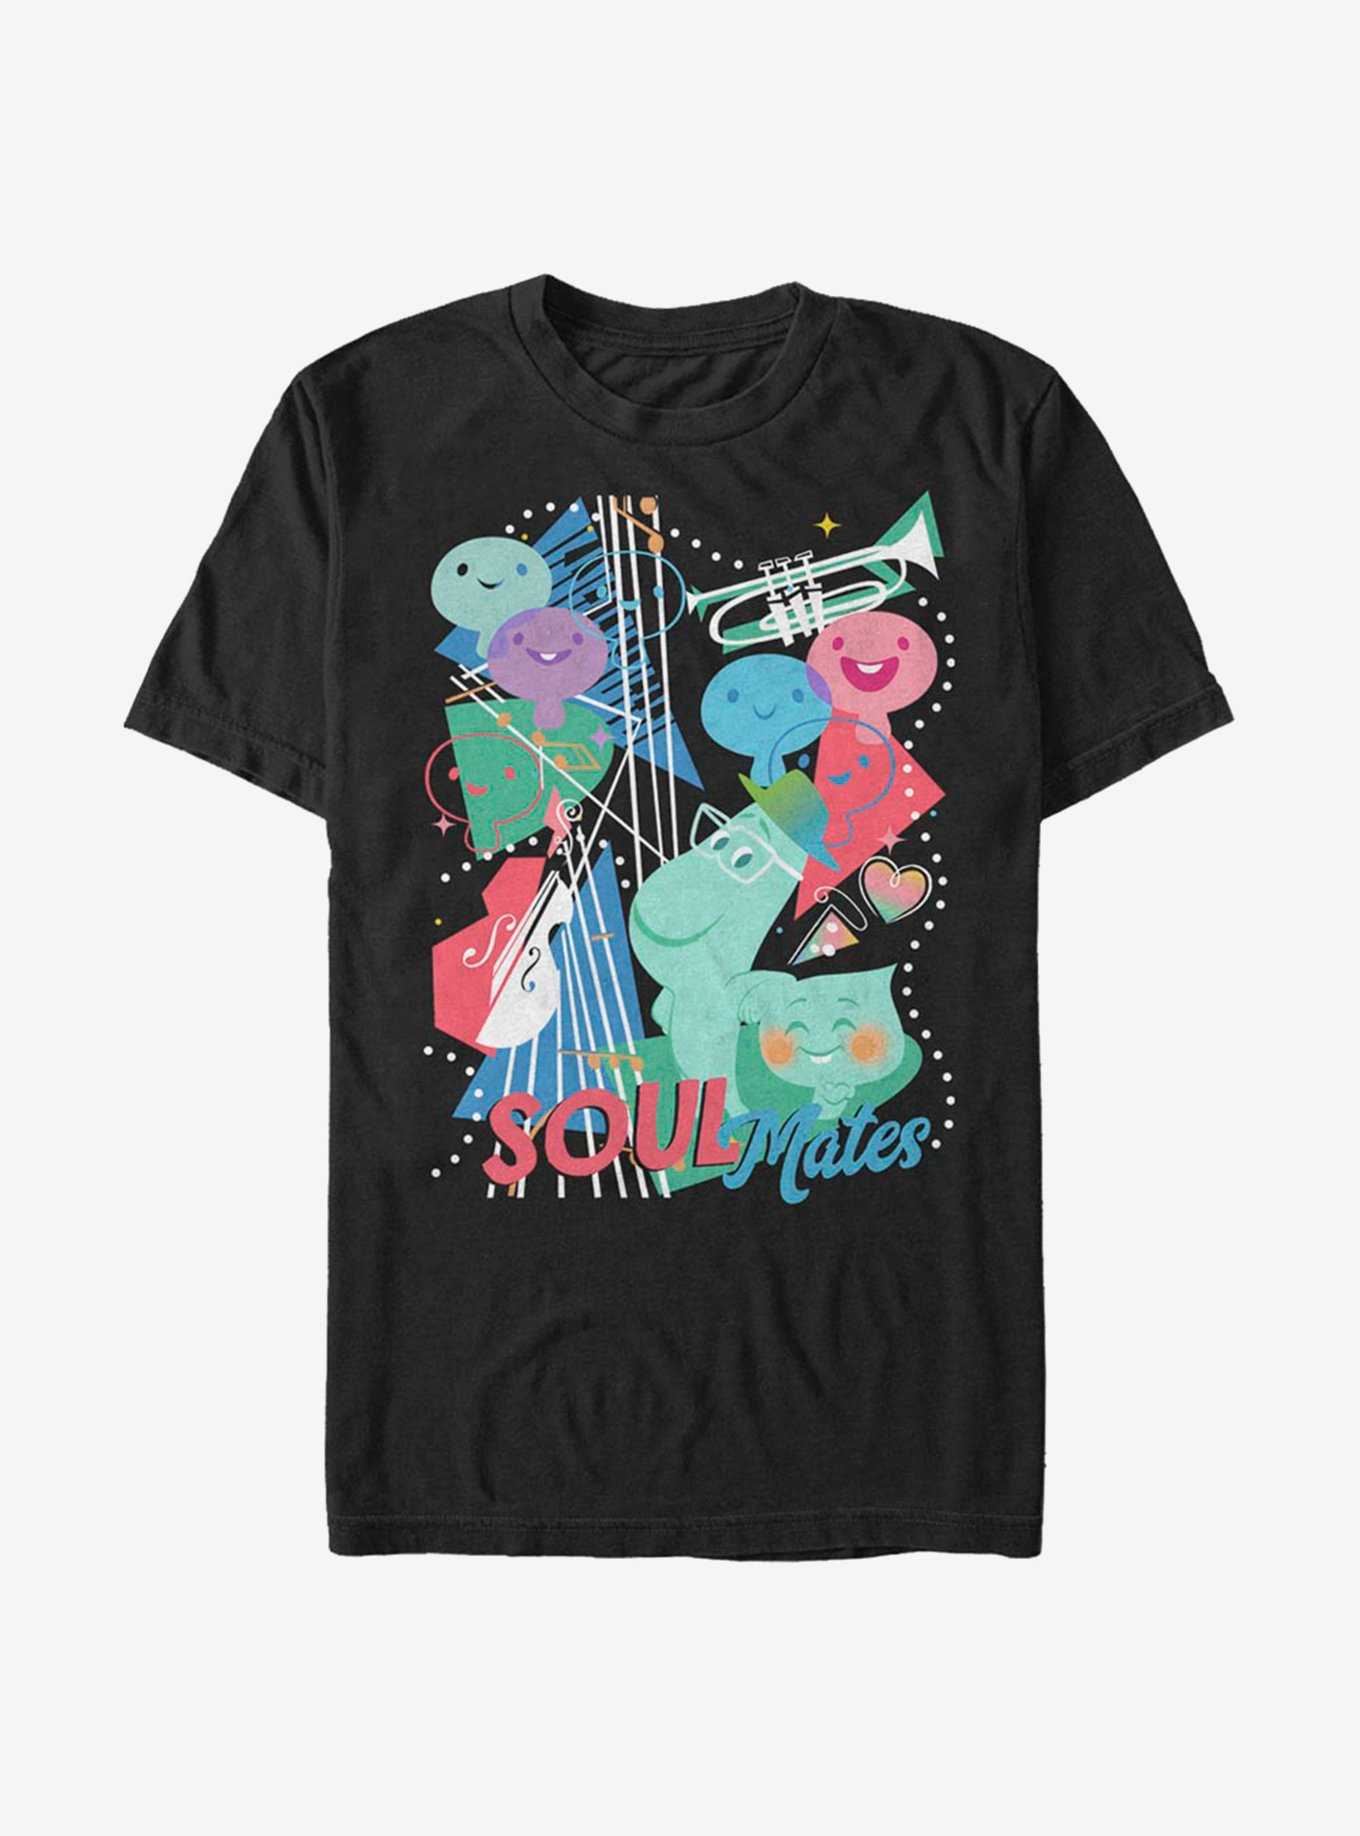 Disney Pixar Soul Jazz Souls T-Shirt, , hi-res